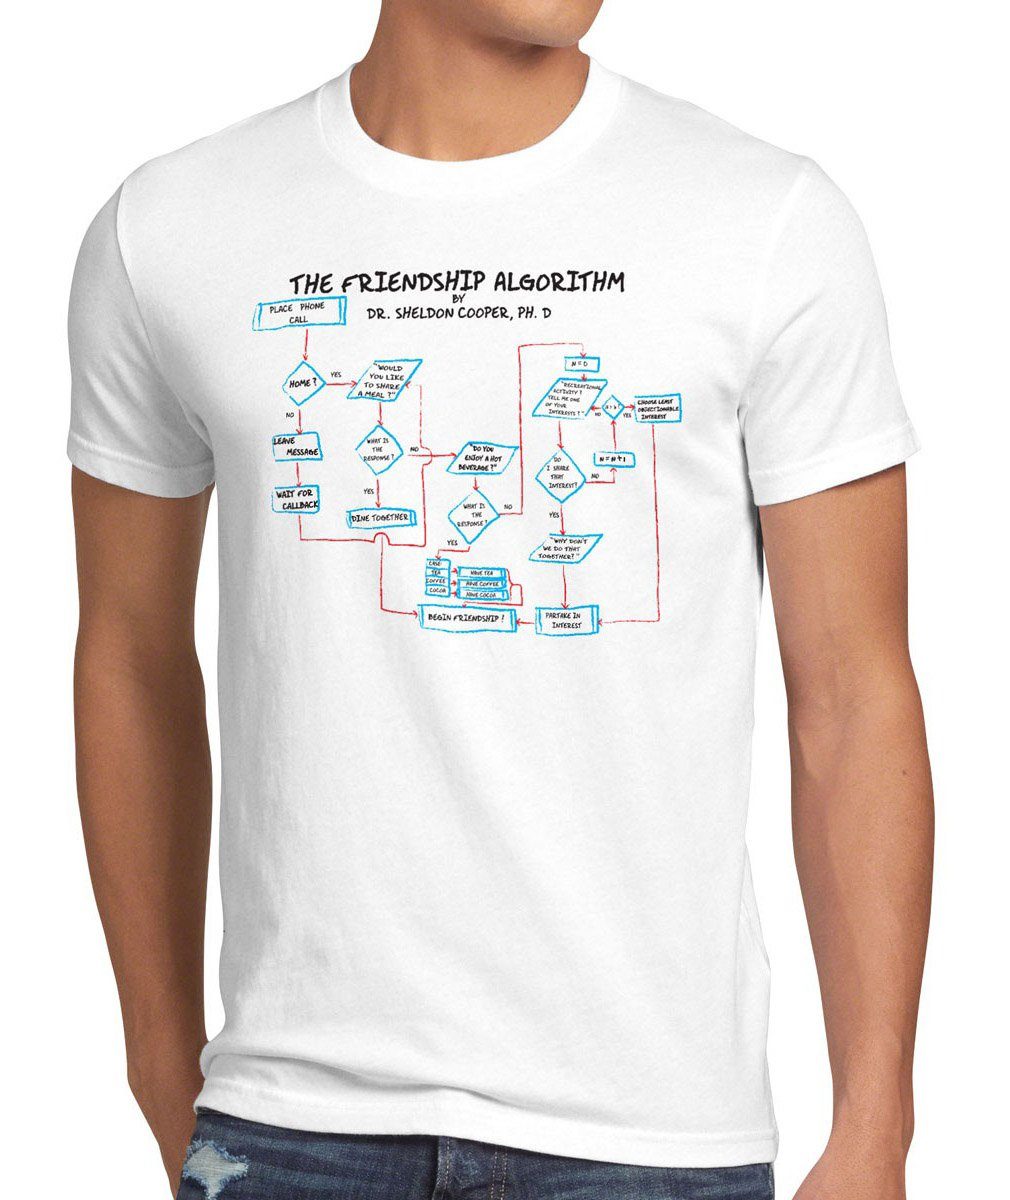 Theory Cooper Algorithm Bang Sheldon Freundschaft Big T-Shirt Formel weiß Friendship Print-Shirt style3 Herren